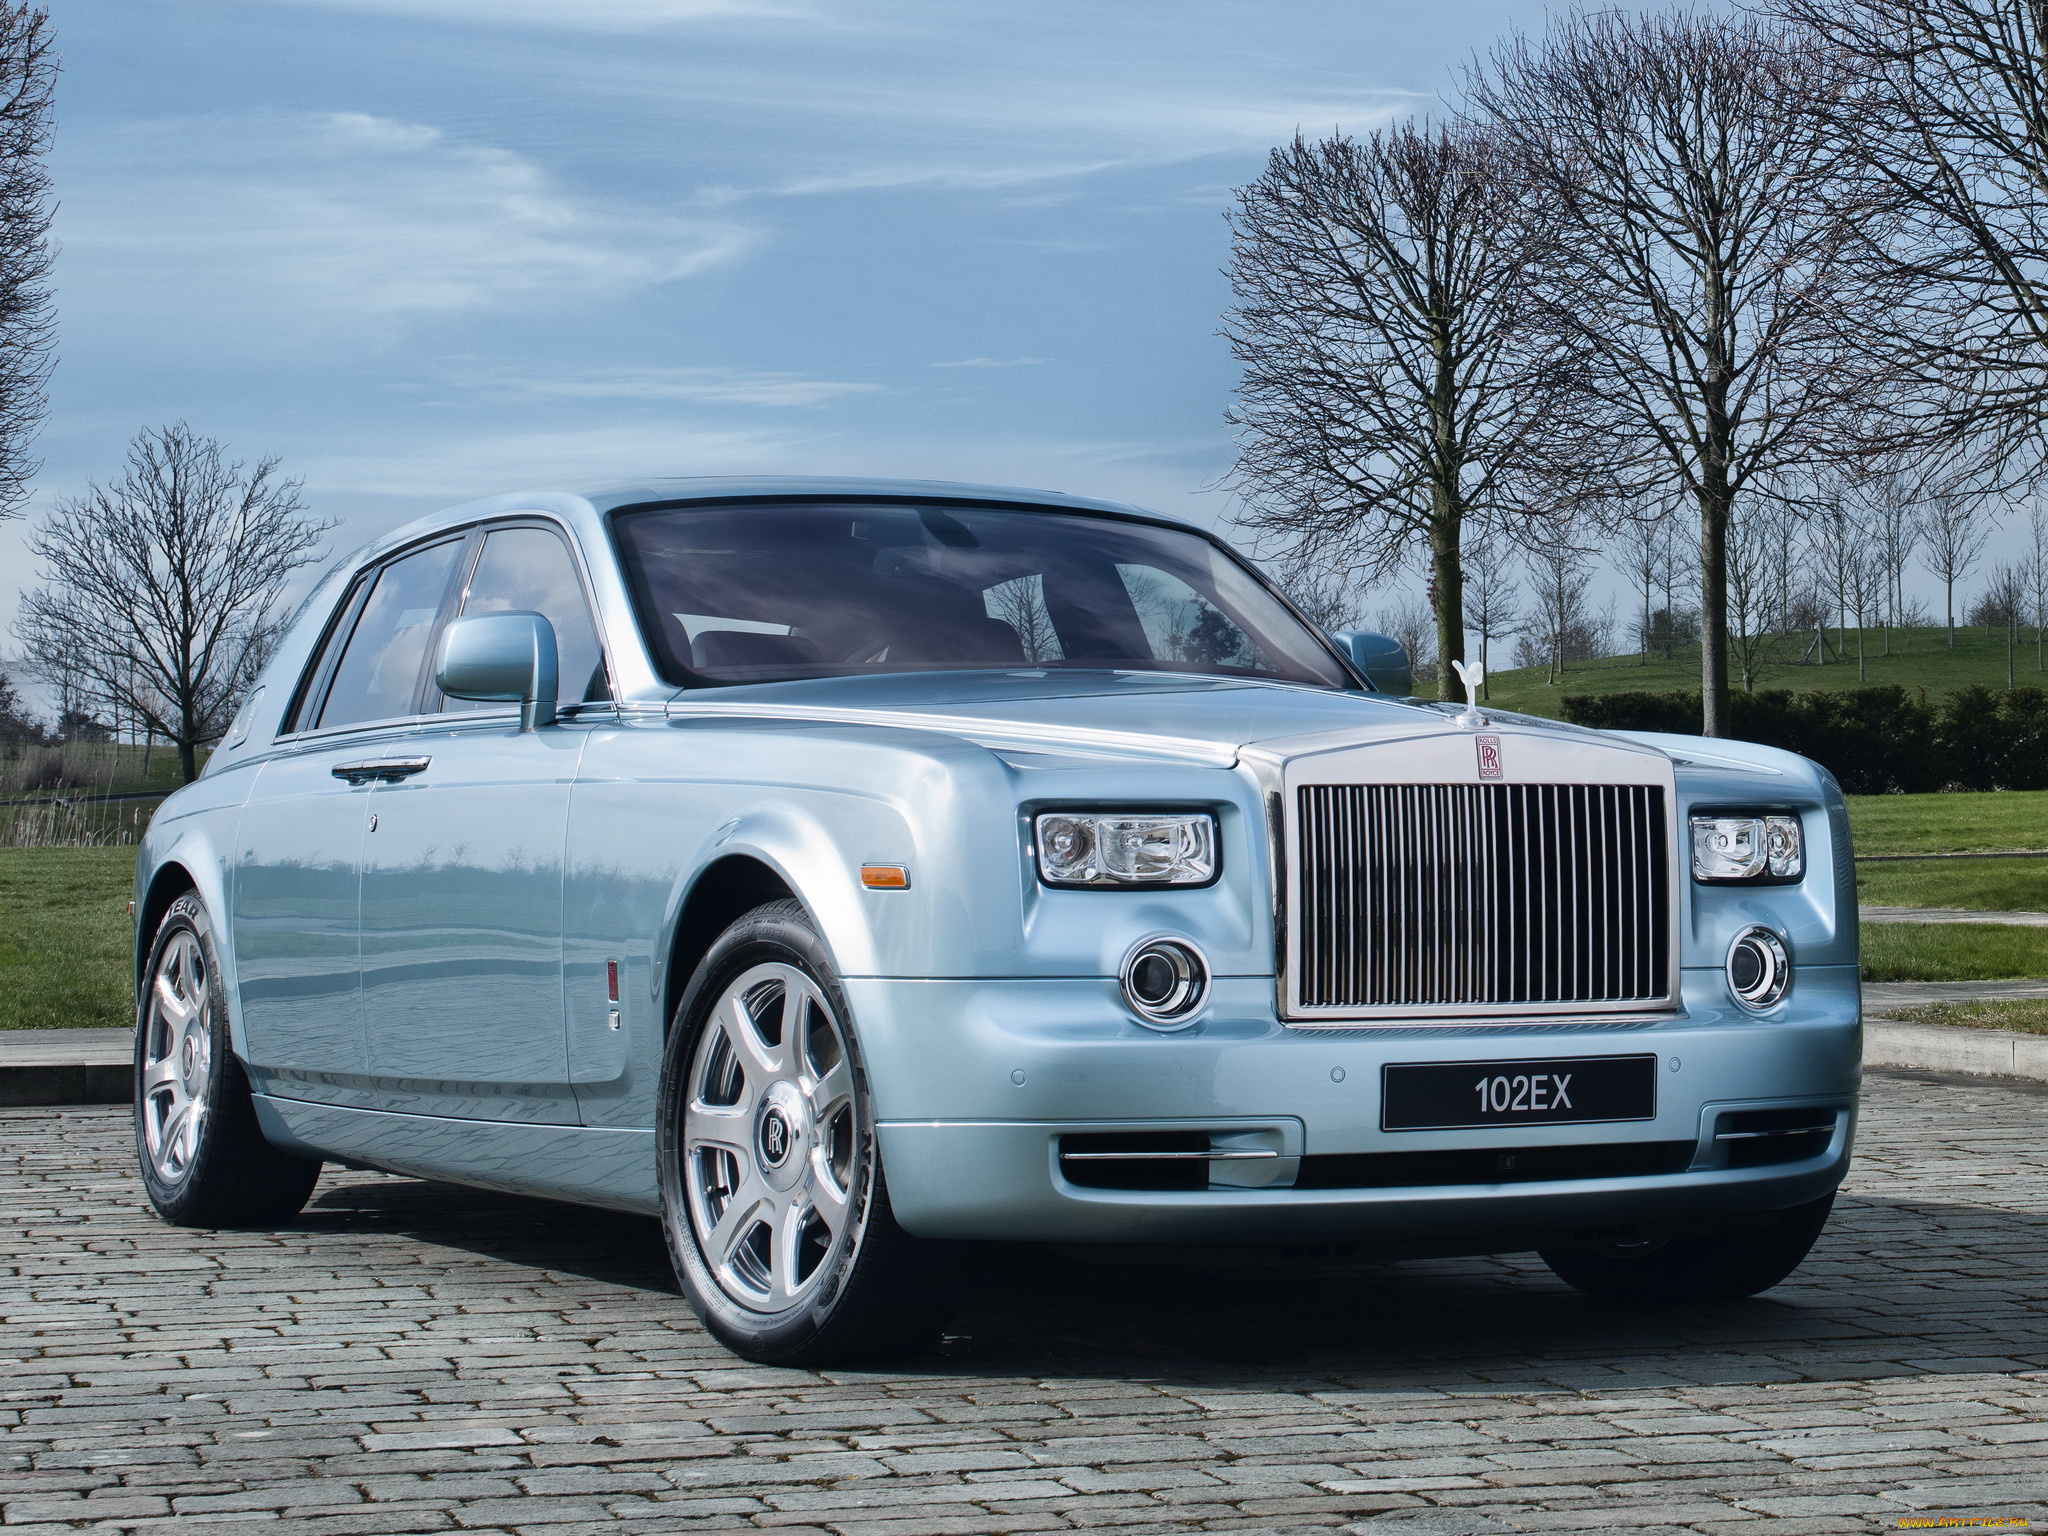 Автомобиль роллс ройс. Rolls Royce. Машина Роллс Ройс. Rolls Royce 2011. Rolls Royce 103ex.